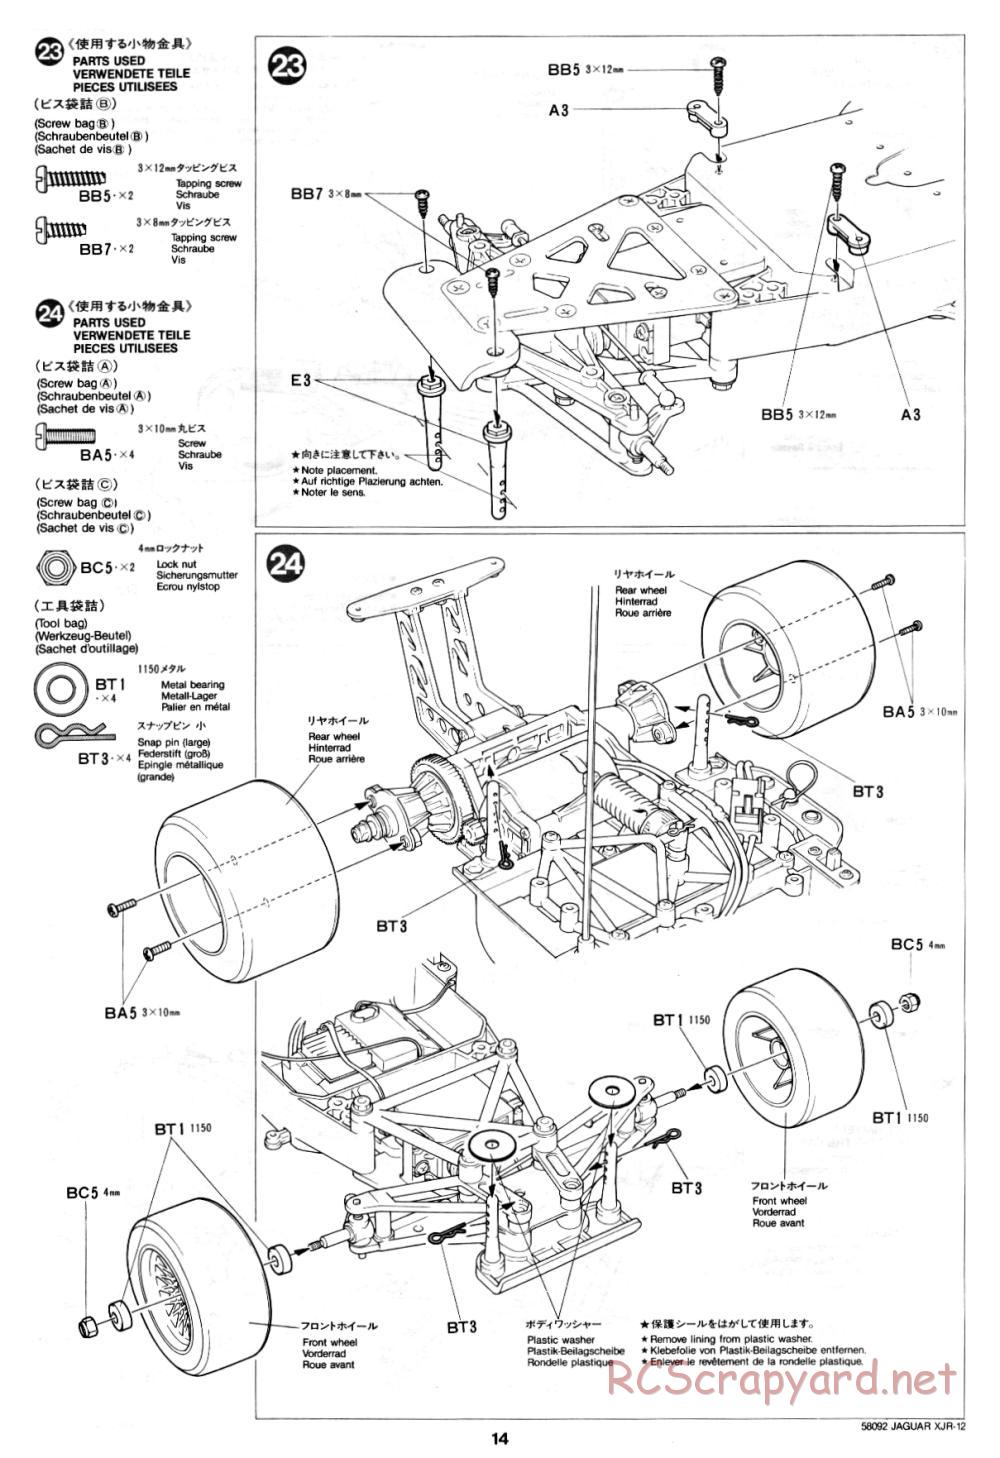 Tamiya - Jaguar XJR-12 - 58092 - Manual - Page 14